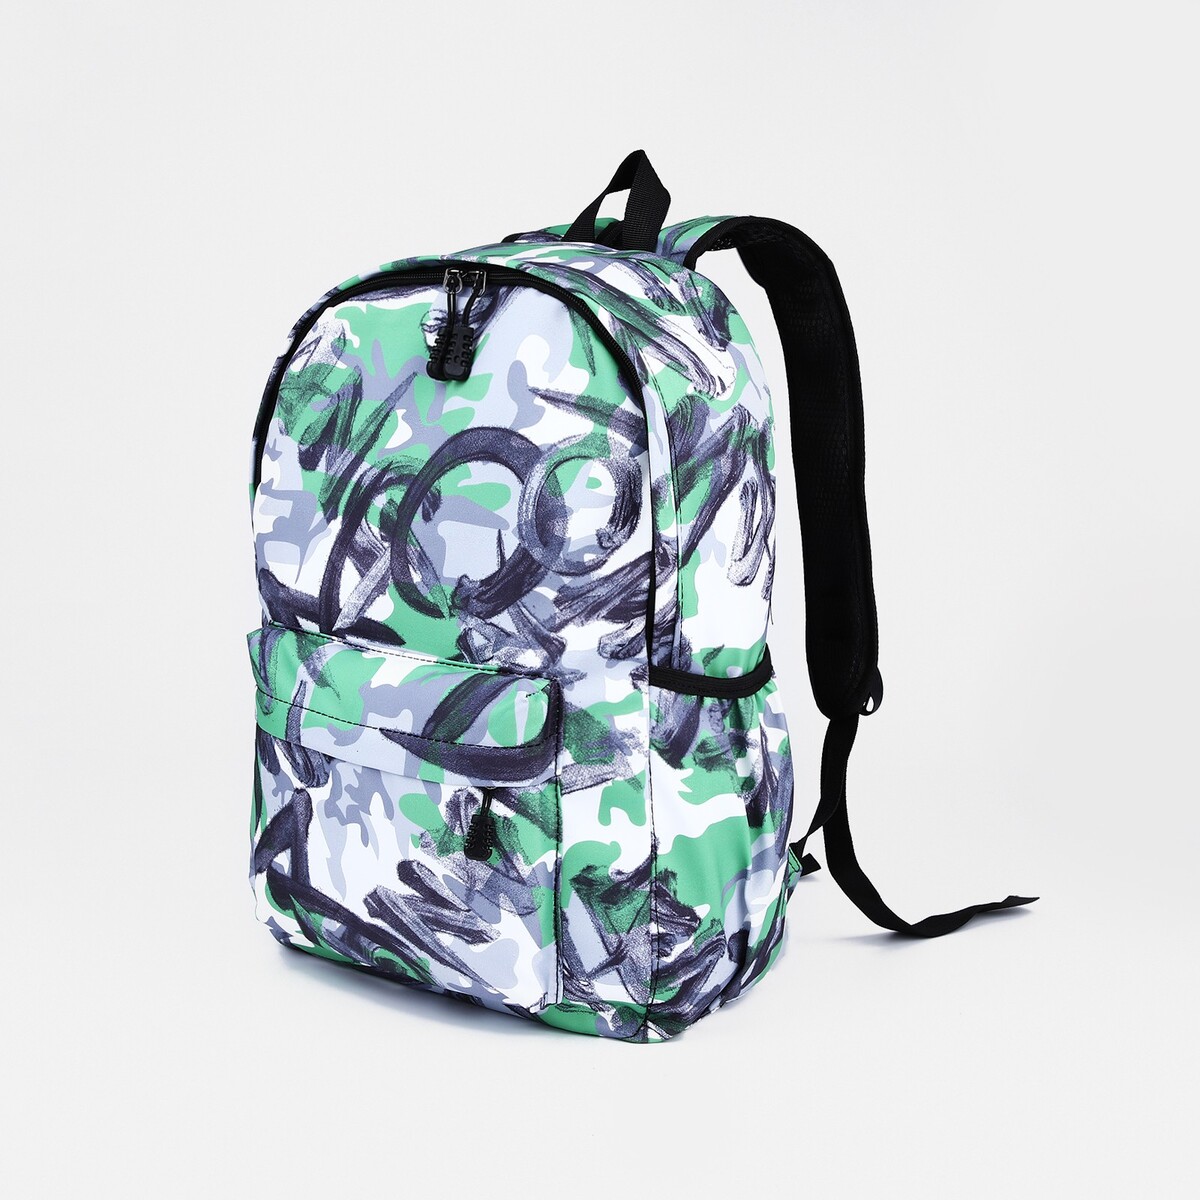 Рюкзак школьный из текстиля на молнии, 3 кармана, цвет зеленый/серый рюкзак школьный из текстиля на молнии 3 кармана зеленый